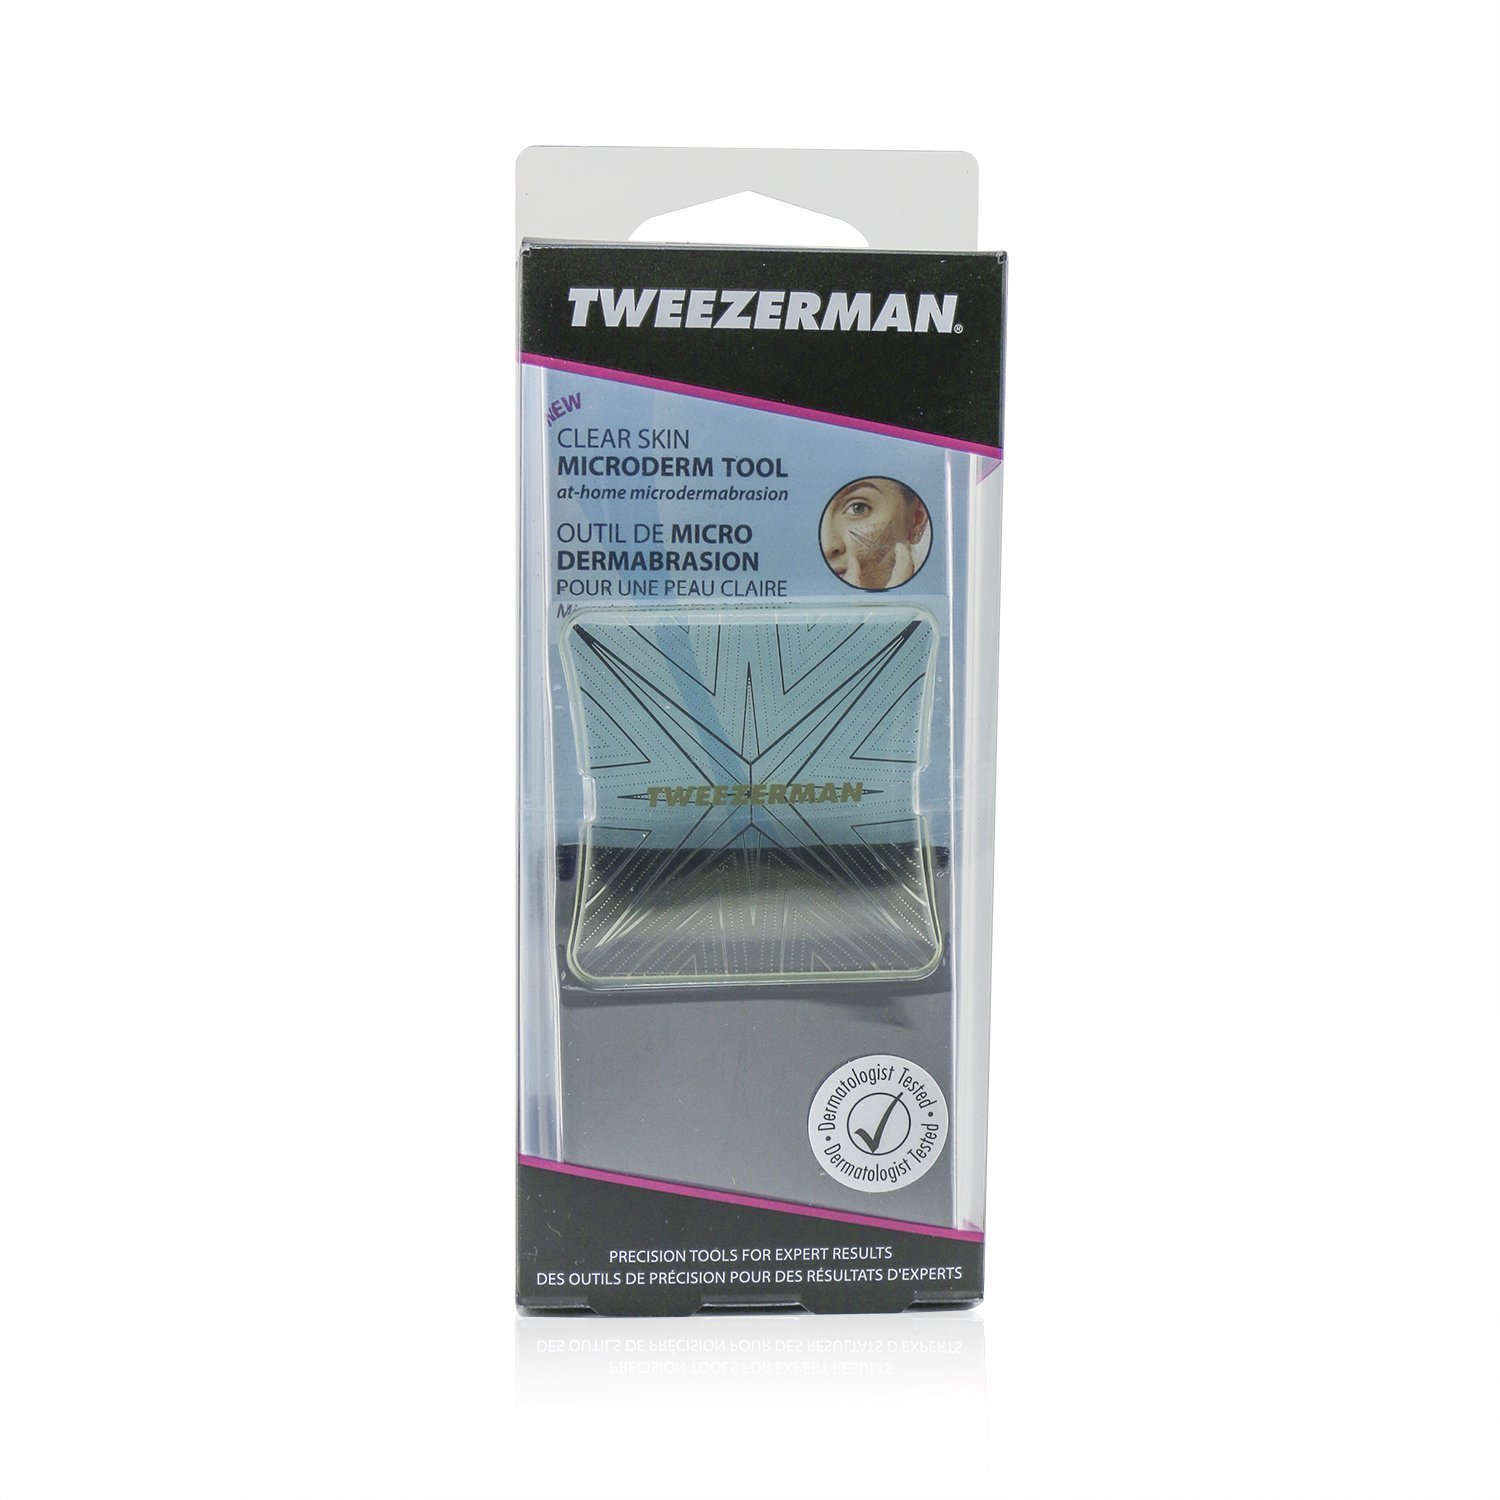 微之魅 Tweezerman - Clear Skin 微型皮膚工具 - 在家磨皮